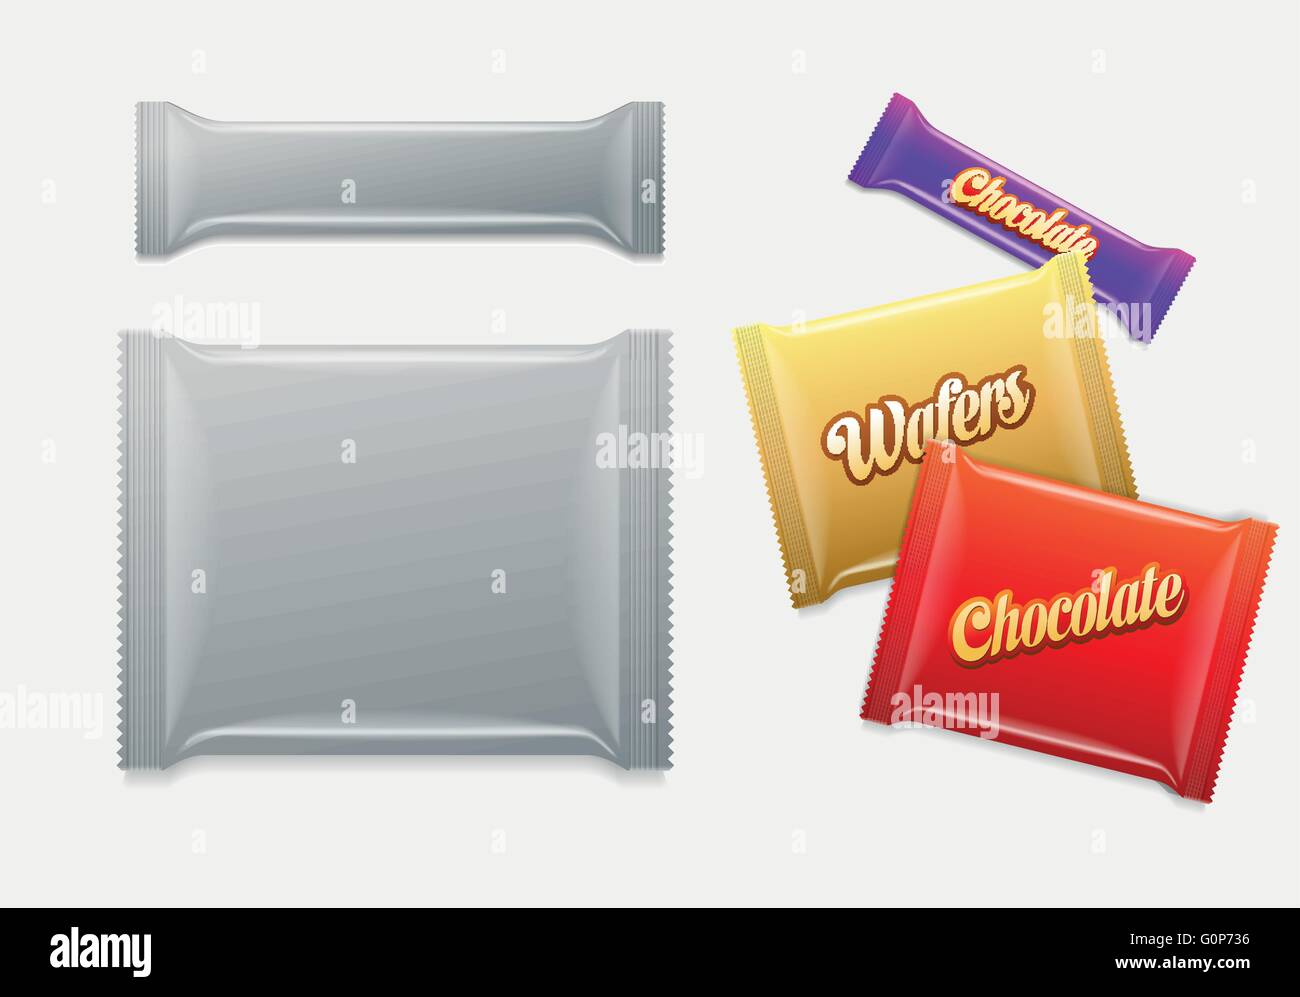 Kunststoff-Paket. Schokolade, Waffeln, Süßigkeiten oder Süßigkeiten Pack.  Einfach bearbeitet werden. Elemente werden separat geschichtet. Wählen Sie einfach "Ihre Wor Stock Vektor